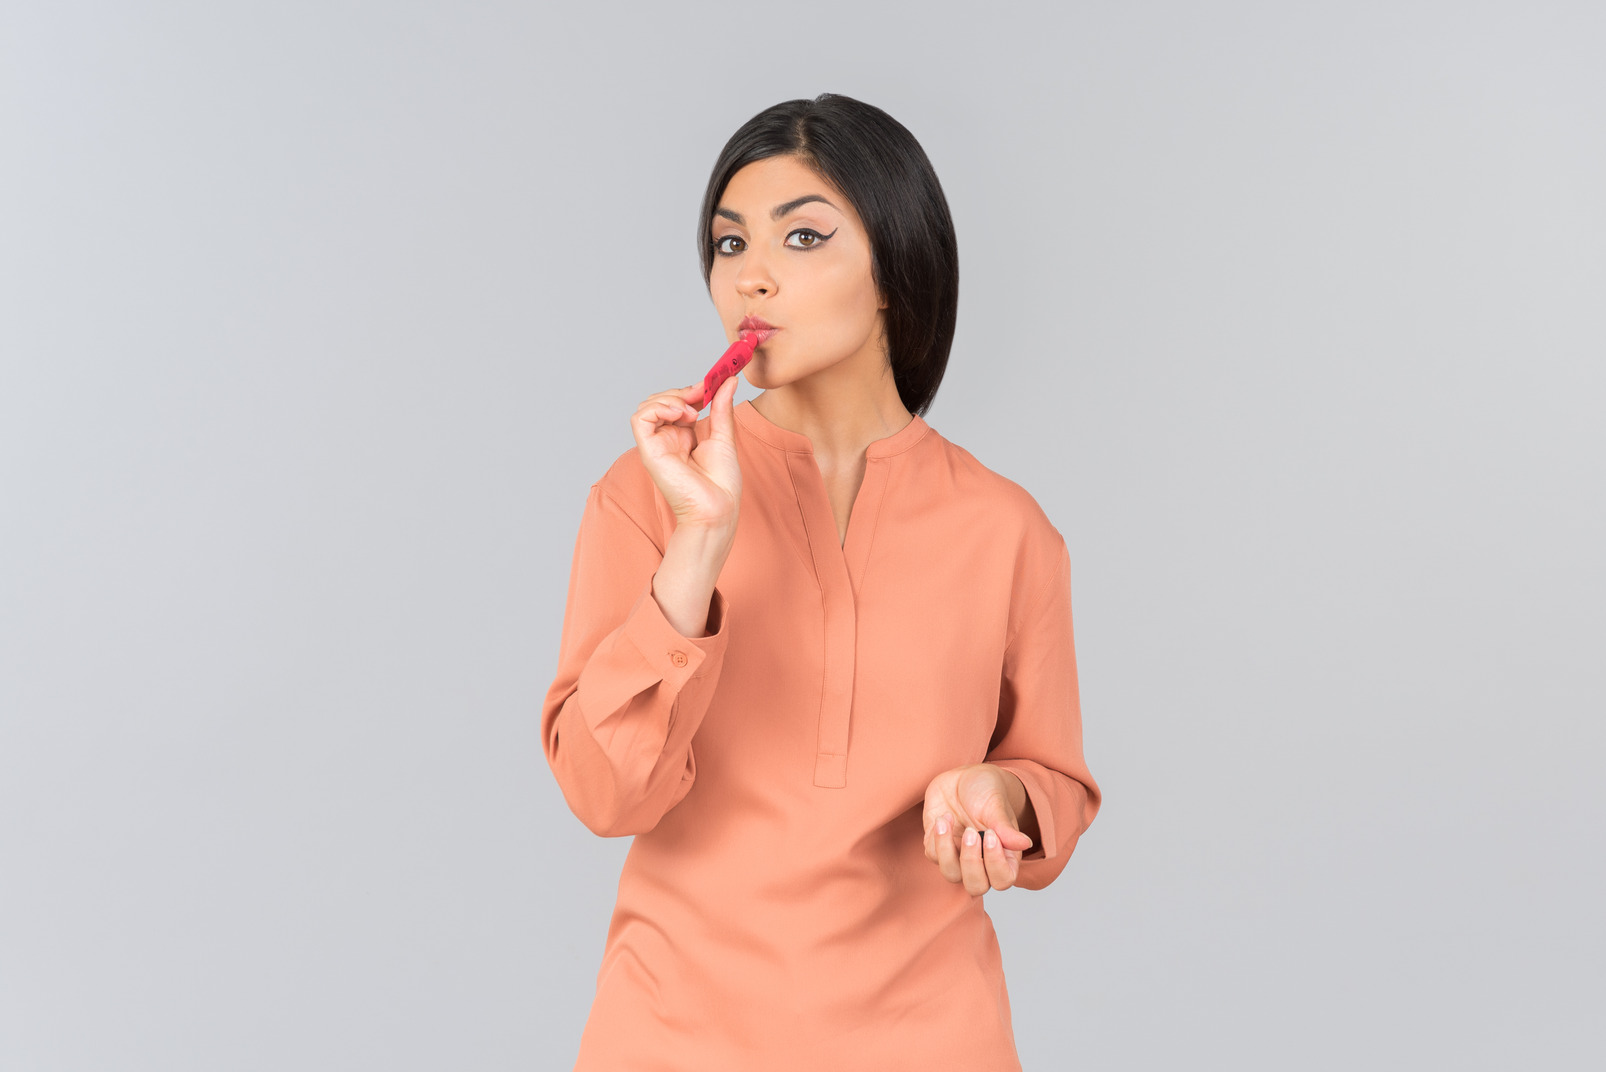 Indian woman in orange top applying lip balm